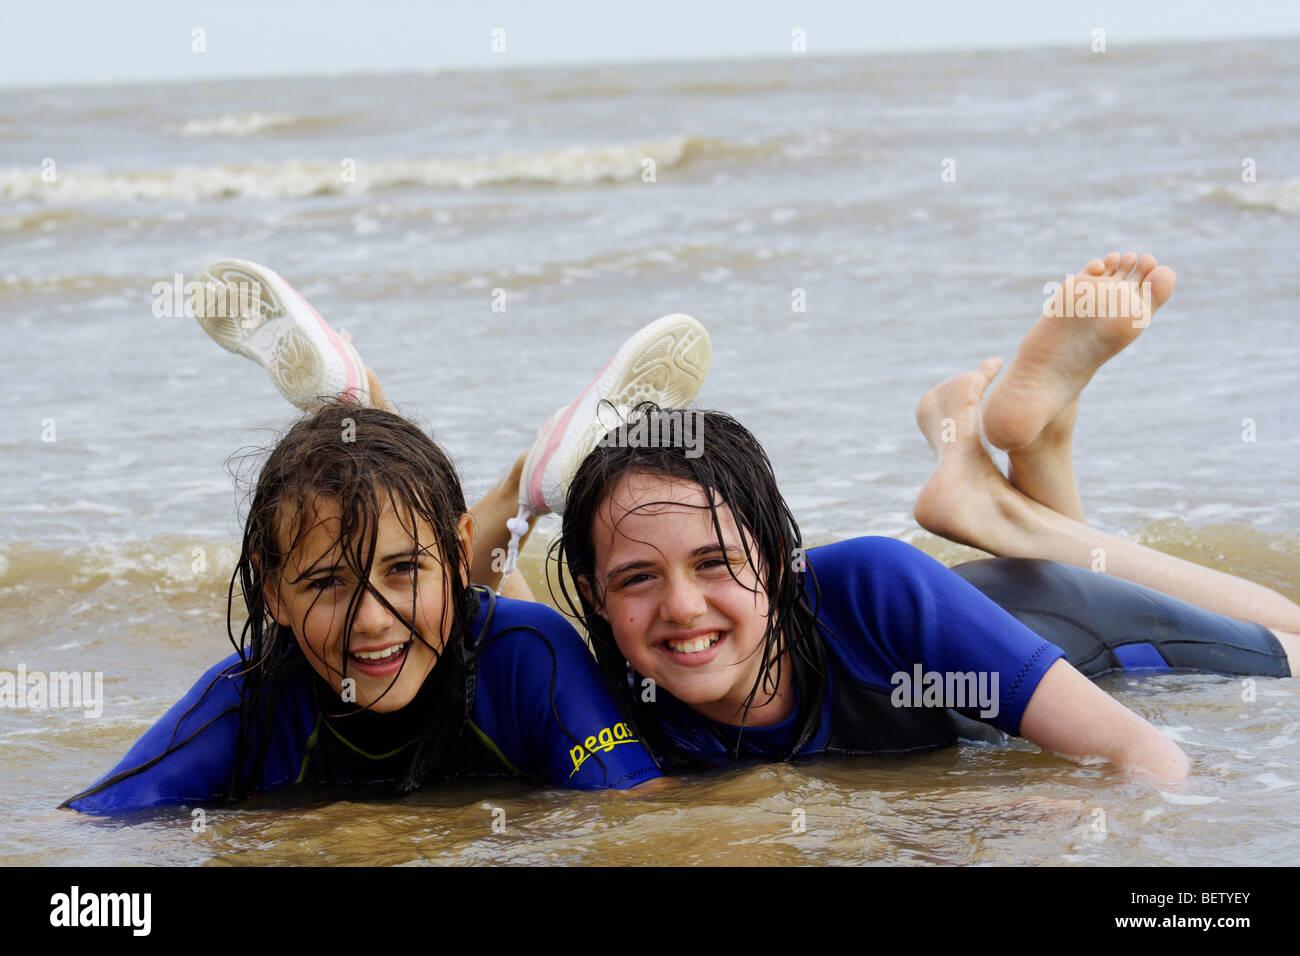 Deux filles adolescents enfants à la plage s'amusant Banque D'Images